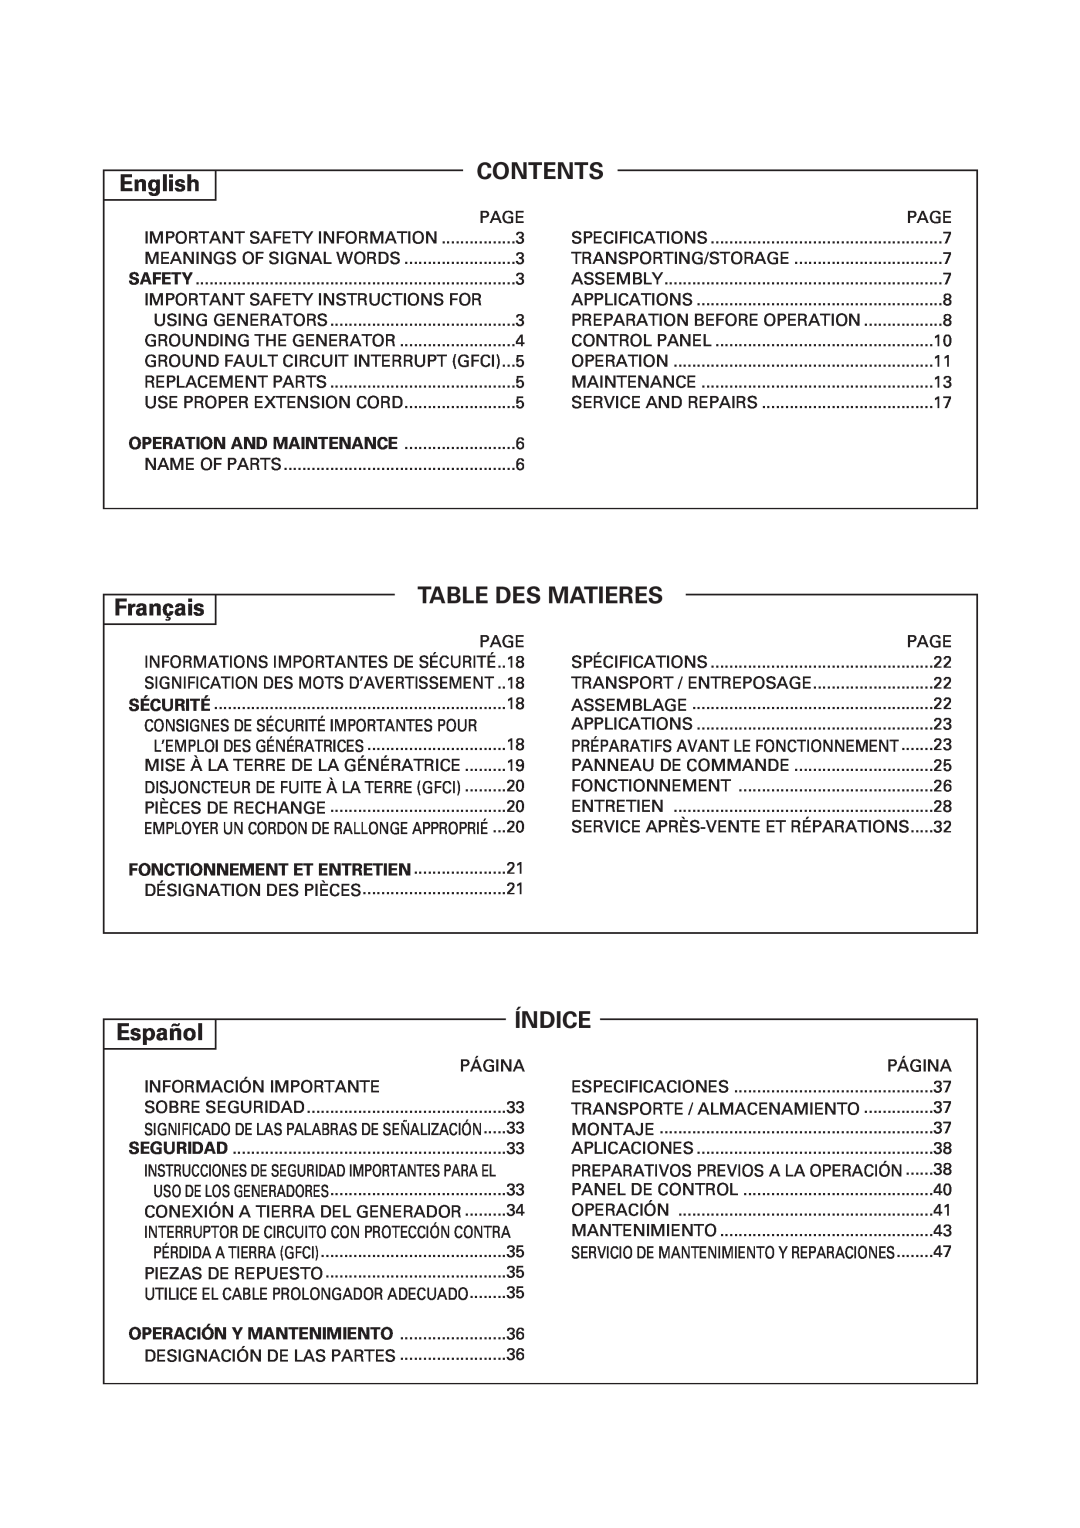 Hitachi E43 instruction manual English, Contents, Français, Table Des Matieres, Español, Índice 